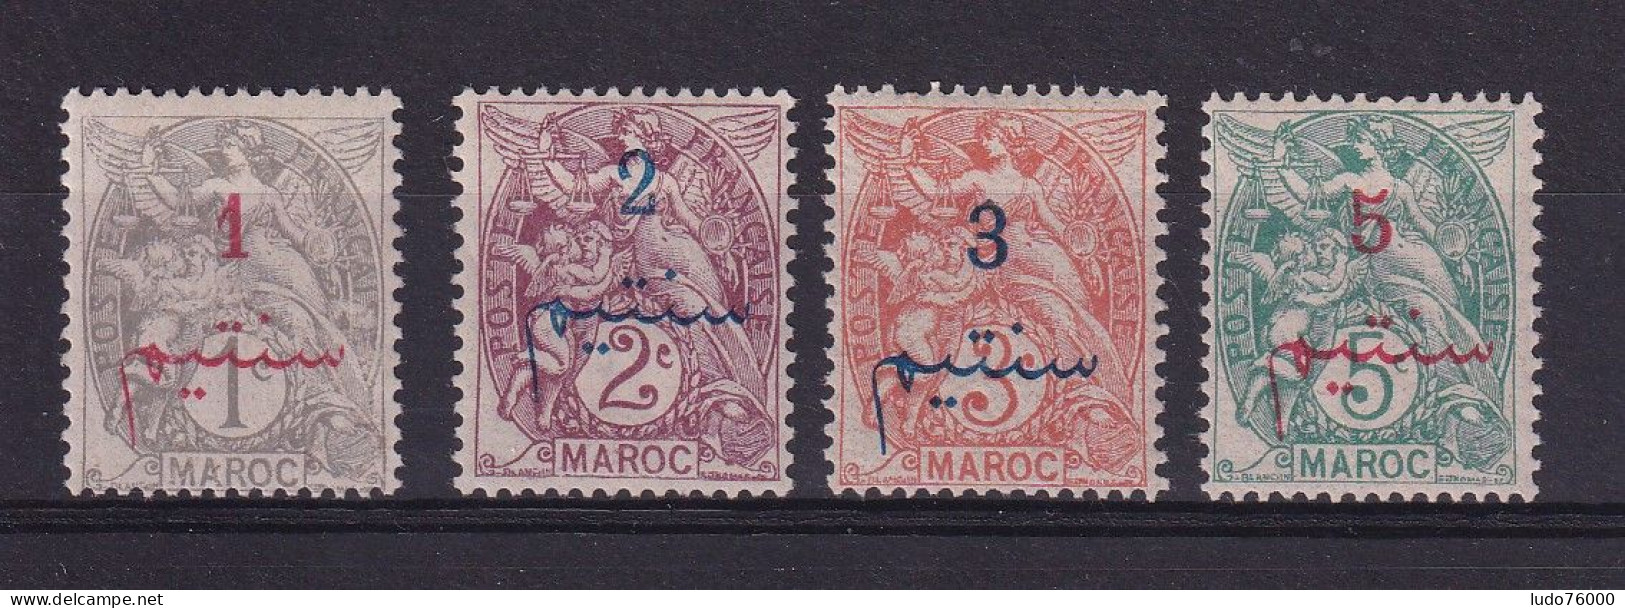 D 782 / COLONIE MAROC / N° 25/28 NEUF**/* COTE 5.50€ - Unused Stamps